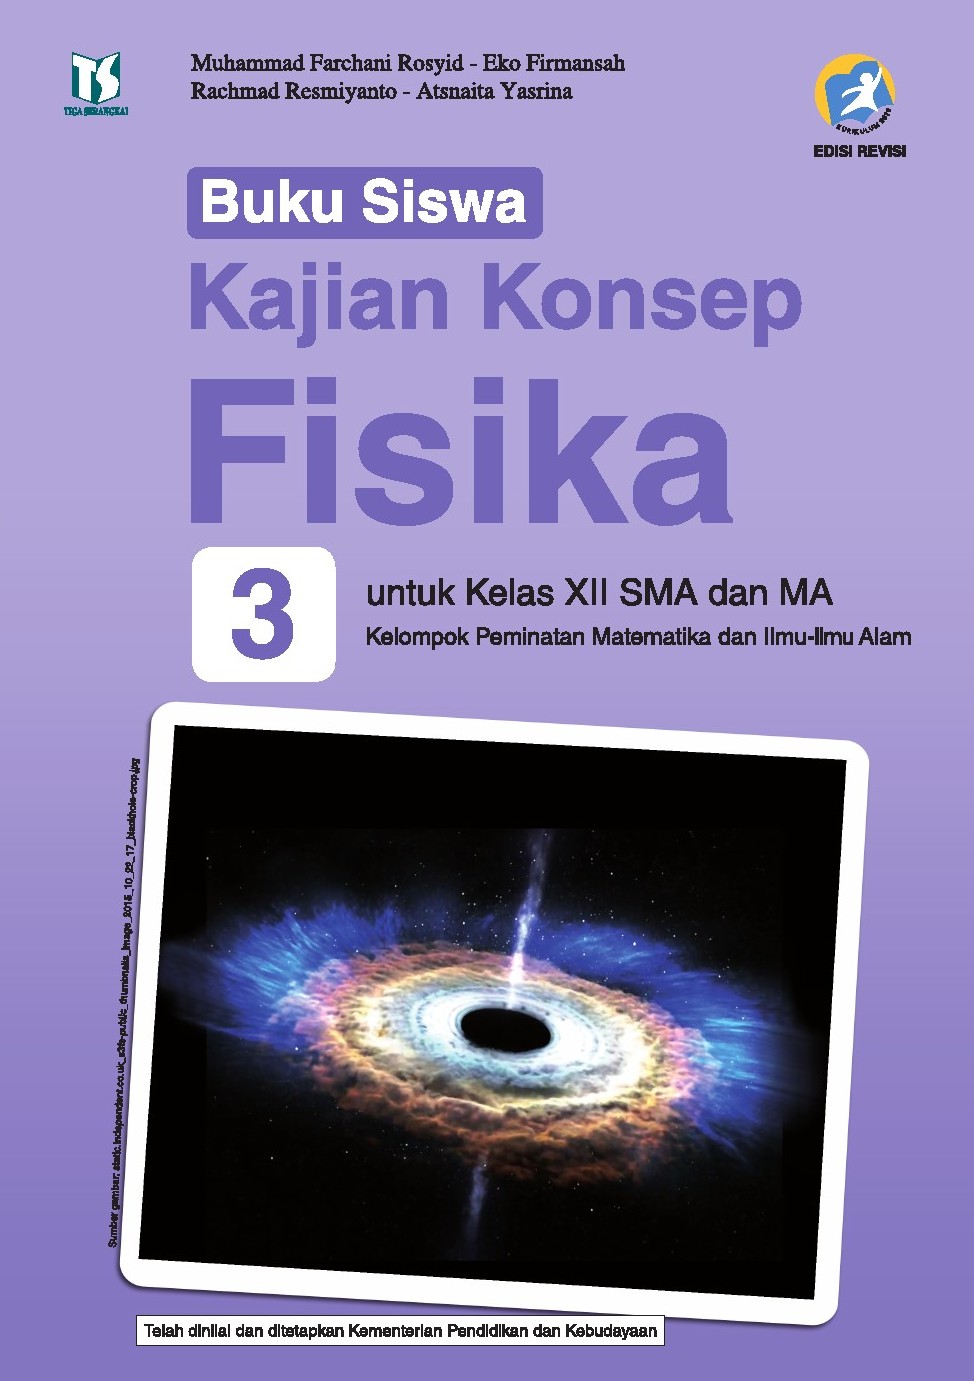 Buku Fisika Kelas 12 Kurikulum 2013 Revisi Pdf - Guru Paud